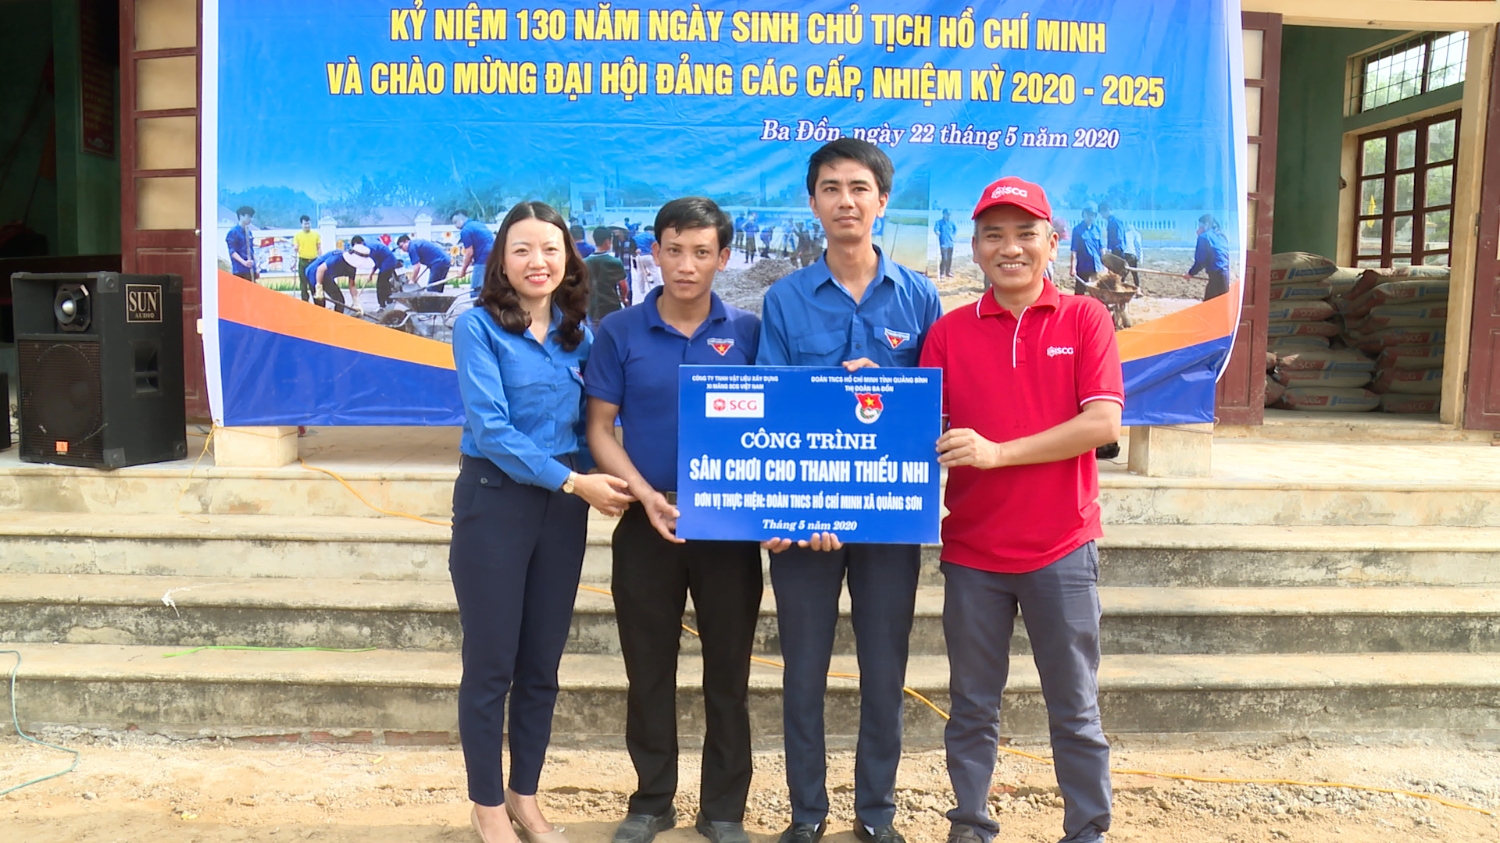 Thị Đoàn Ba Đồn: Khởi công và bàn giao công trình sân chơi cho thanh thiếu nhi thôn Hà Sơn.